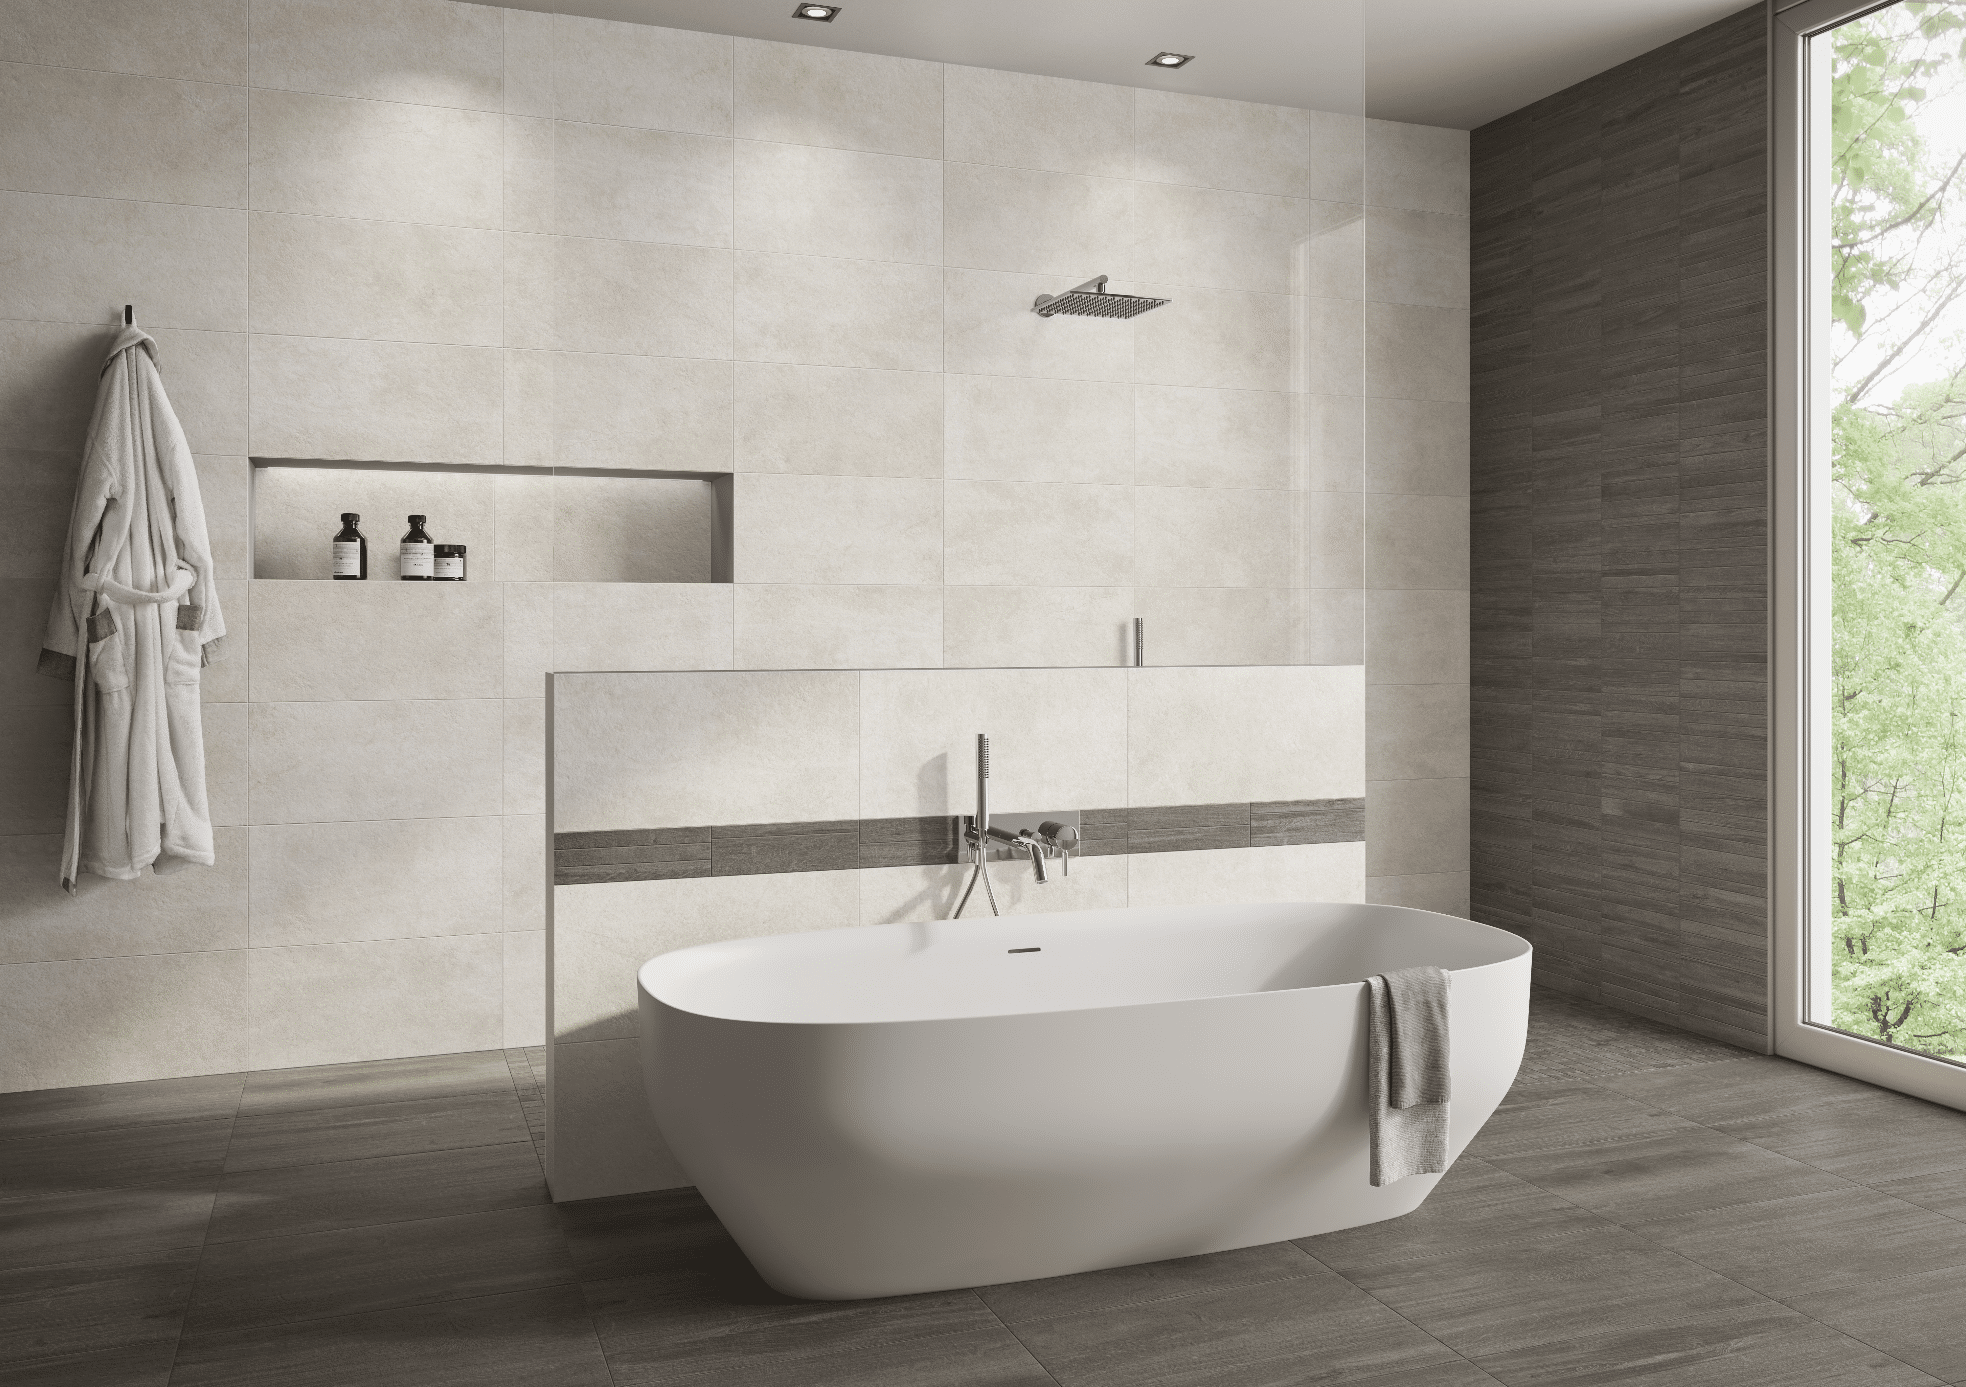 C. Bergmann zeigt ein gefliestes Badezimmer mit grossen, rechteckigen Fliesen, einer freistehenden weissen Badewanne und offener Dusche von Engers.